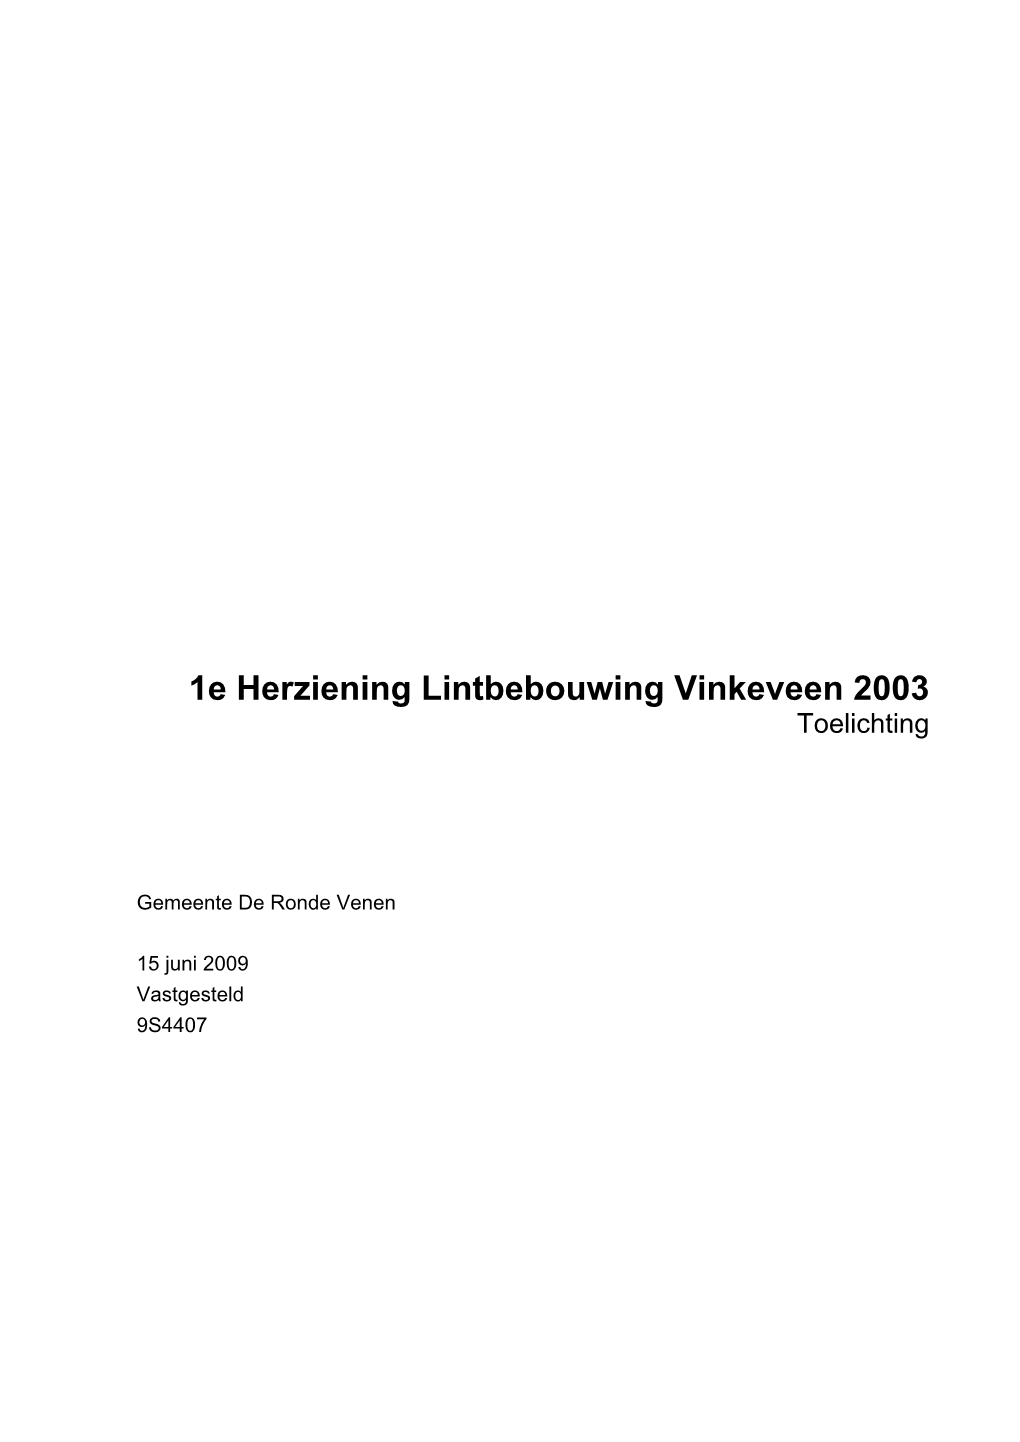 Toelichting 1E Herziening Lintbebouwing Vinkeveen 2003